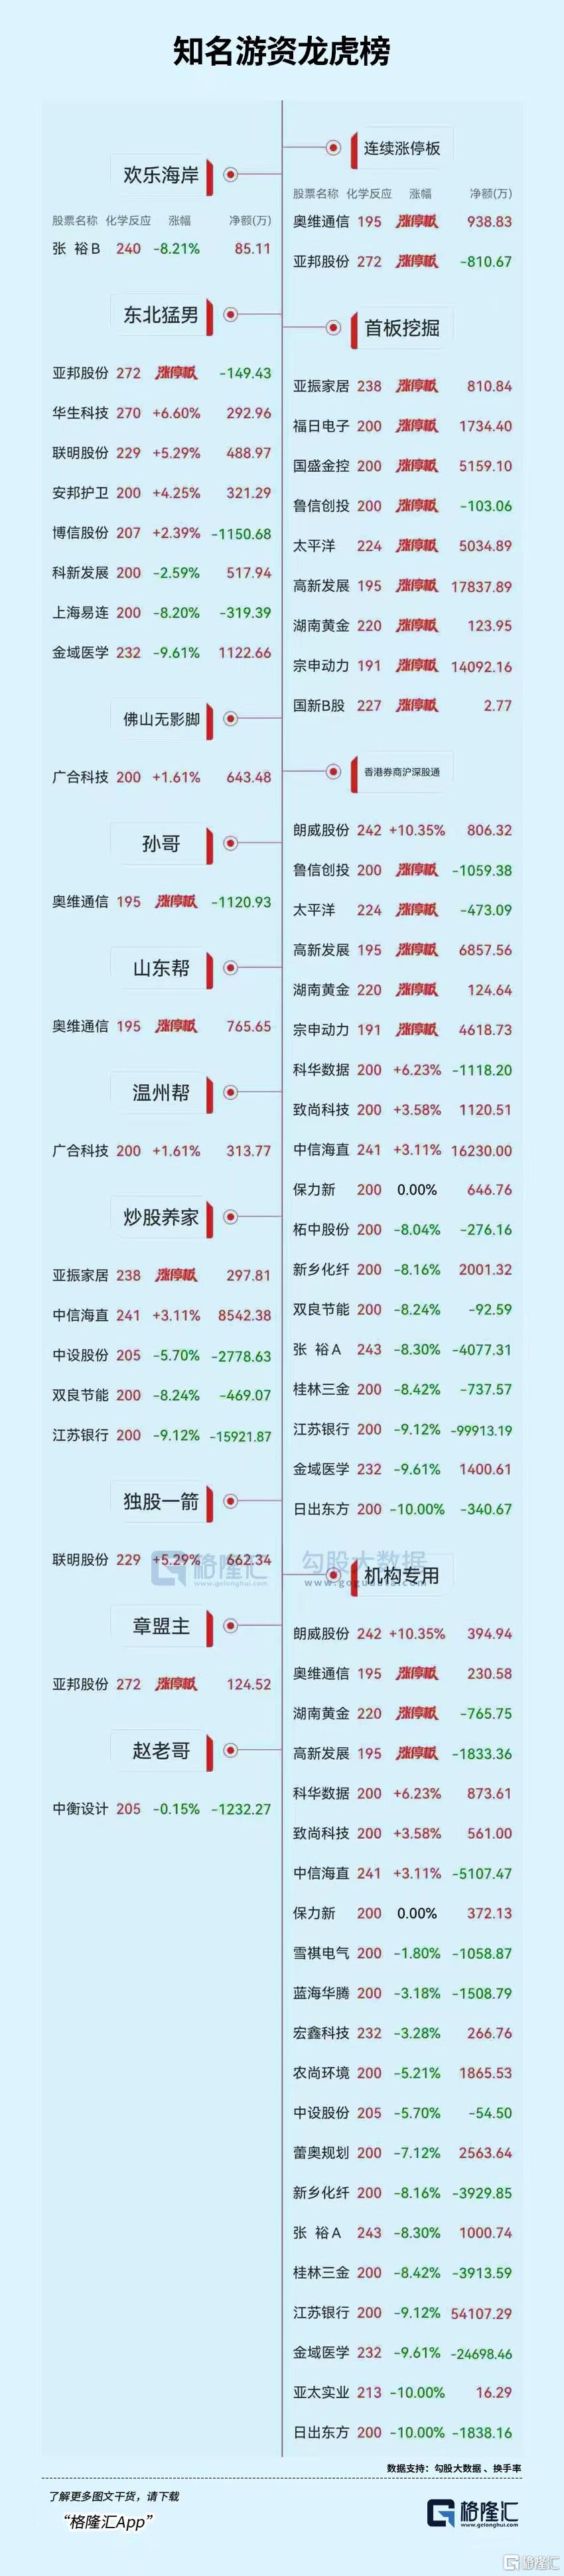 龙虎榜 | 沪股通、游资联手“狂卖”江苏银行，国盾量子遭1机构卖出1.77亿元